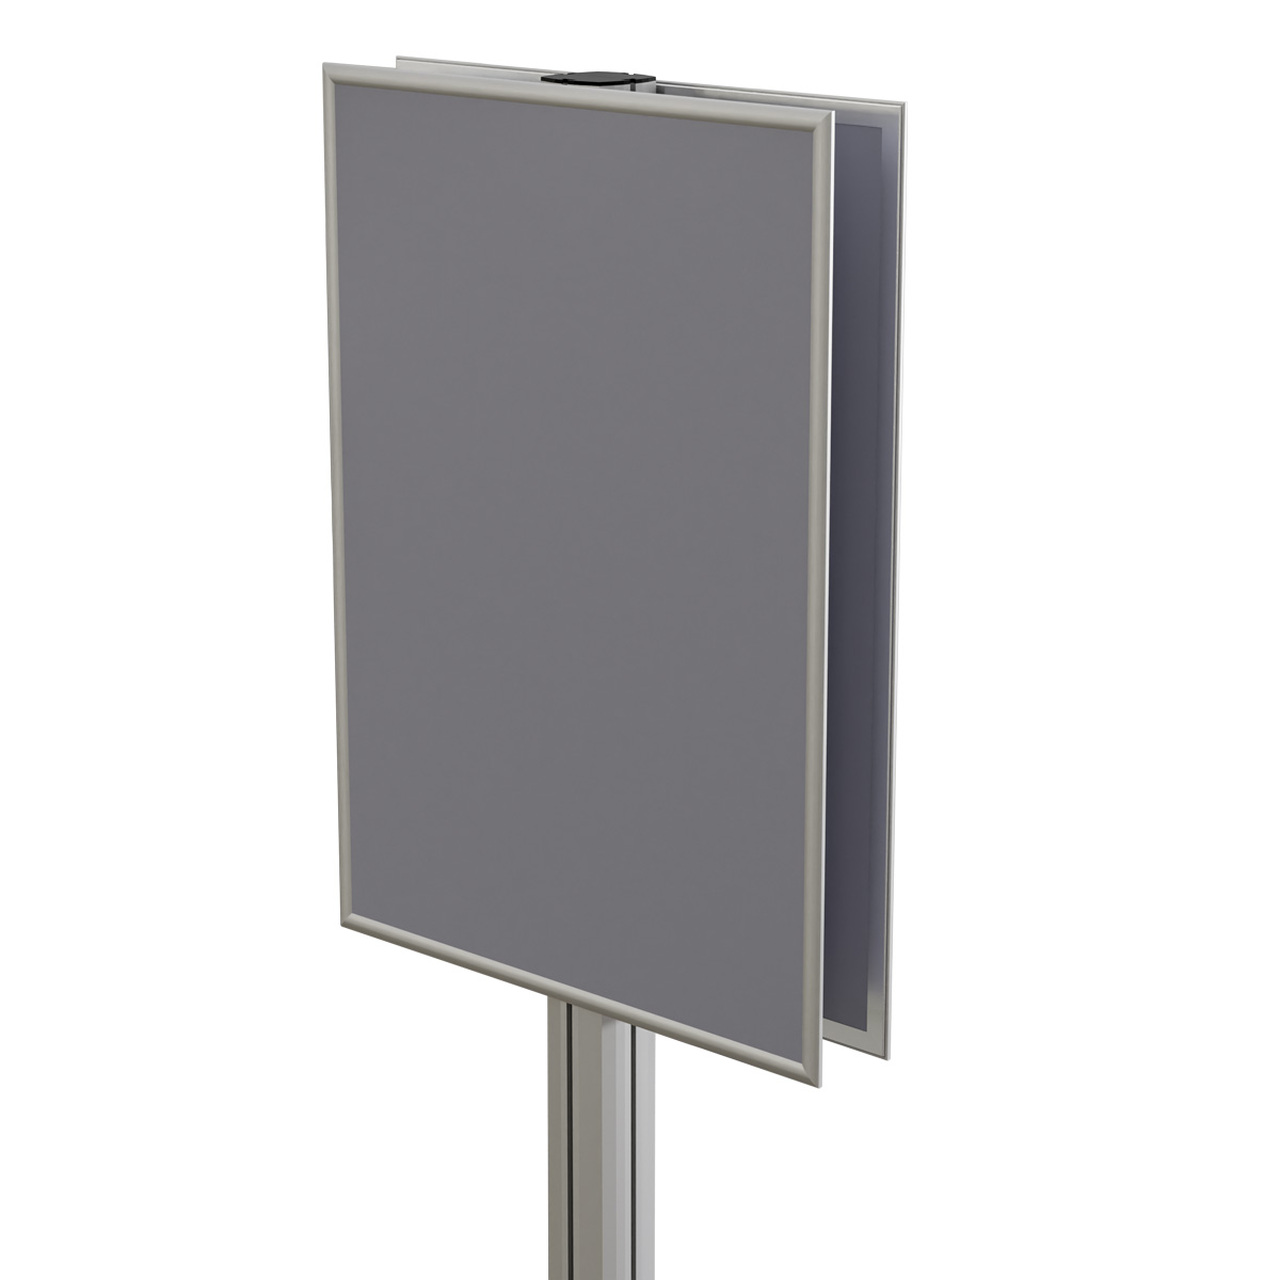 Info Board SL, stand pentru afișaj cu ramă click și picior profil SL aluminiu, expunere dublă față, dimensiuni la cerere